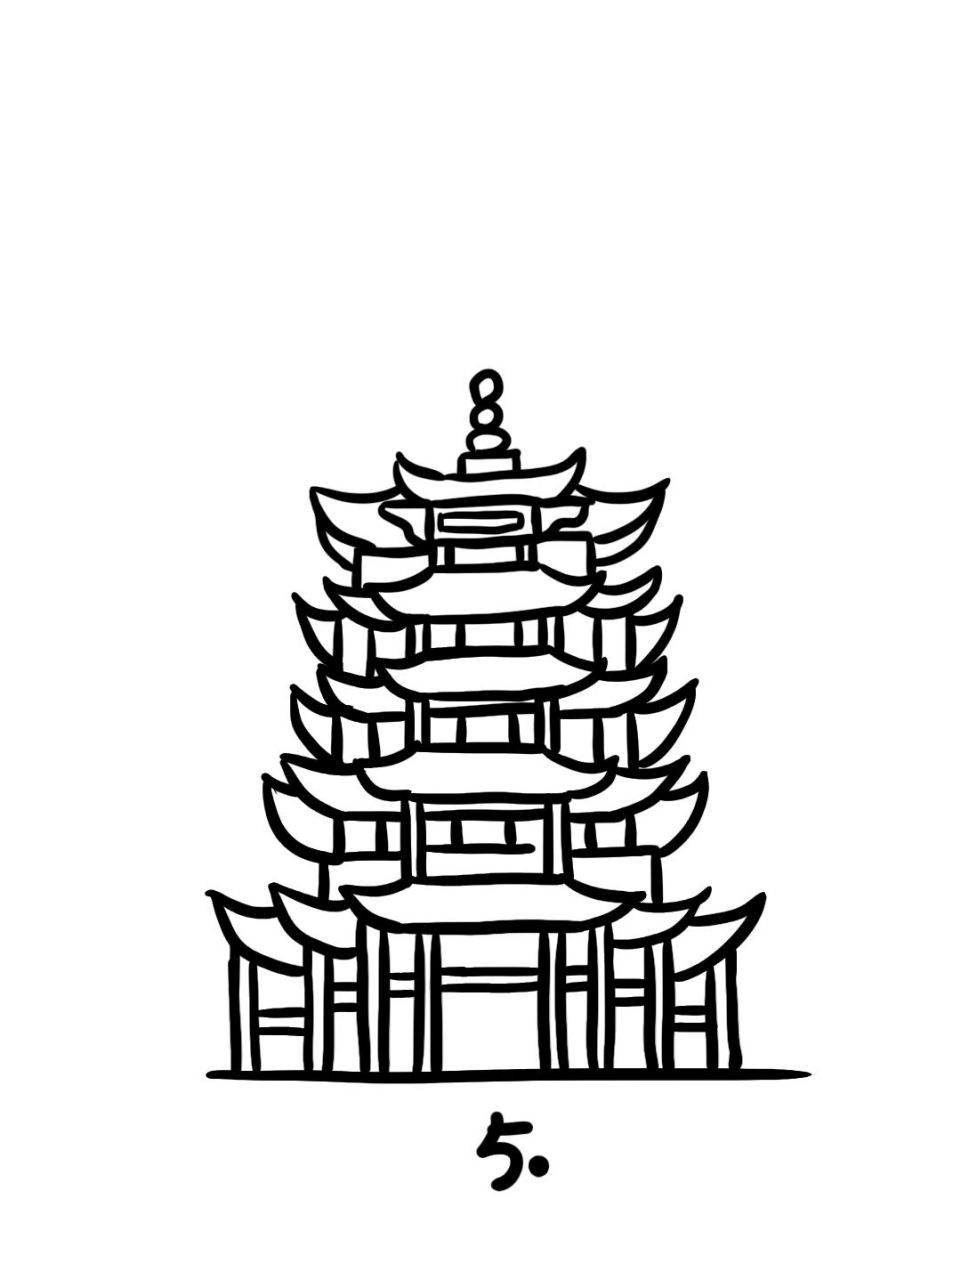 武汉代表性建筑简笔画图片